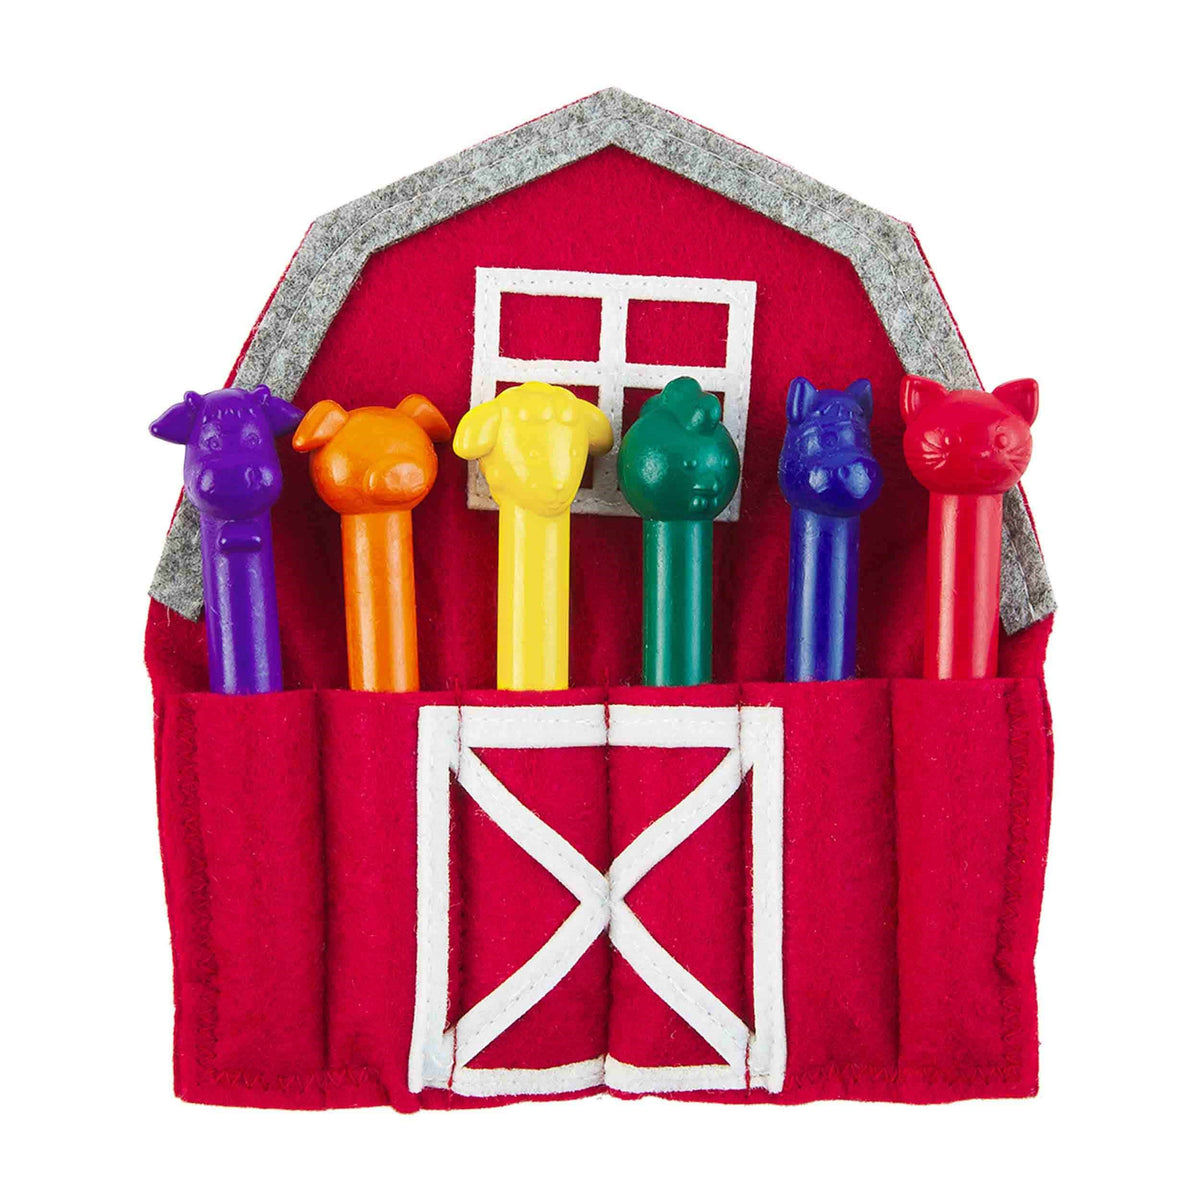 Barn Coloring Crayon Holder Set